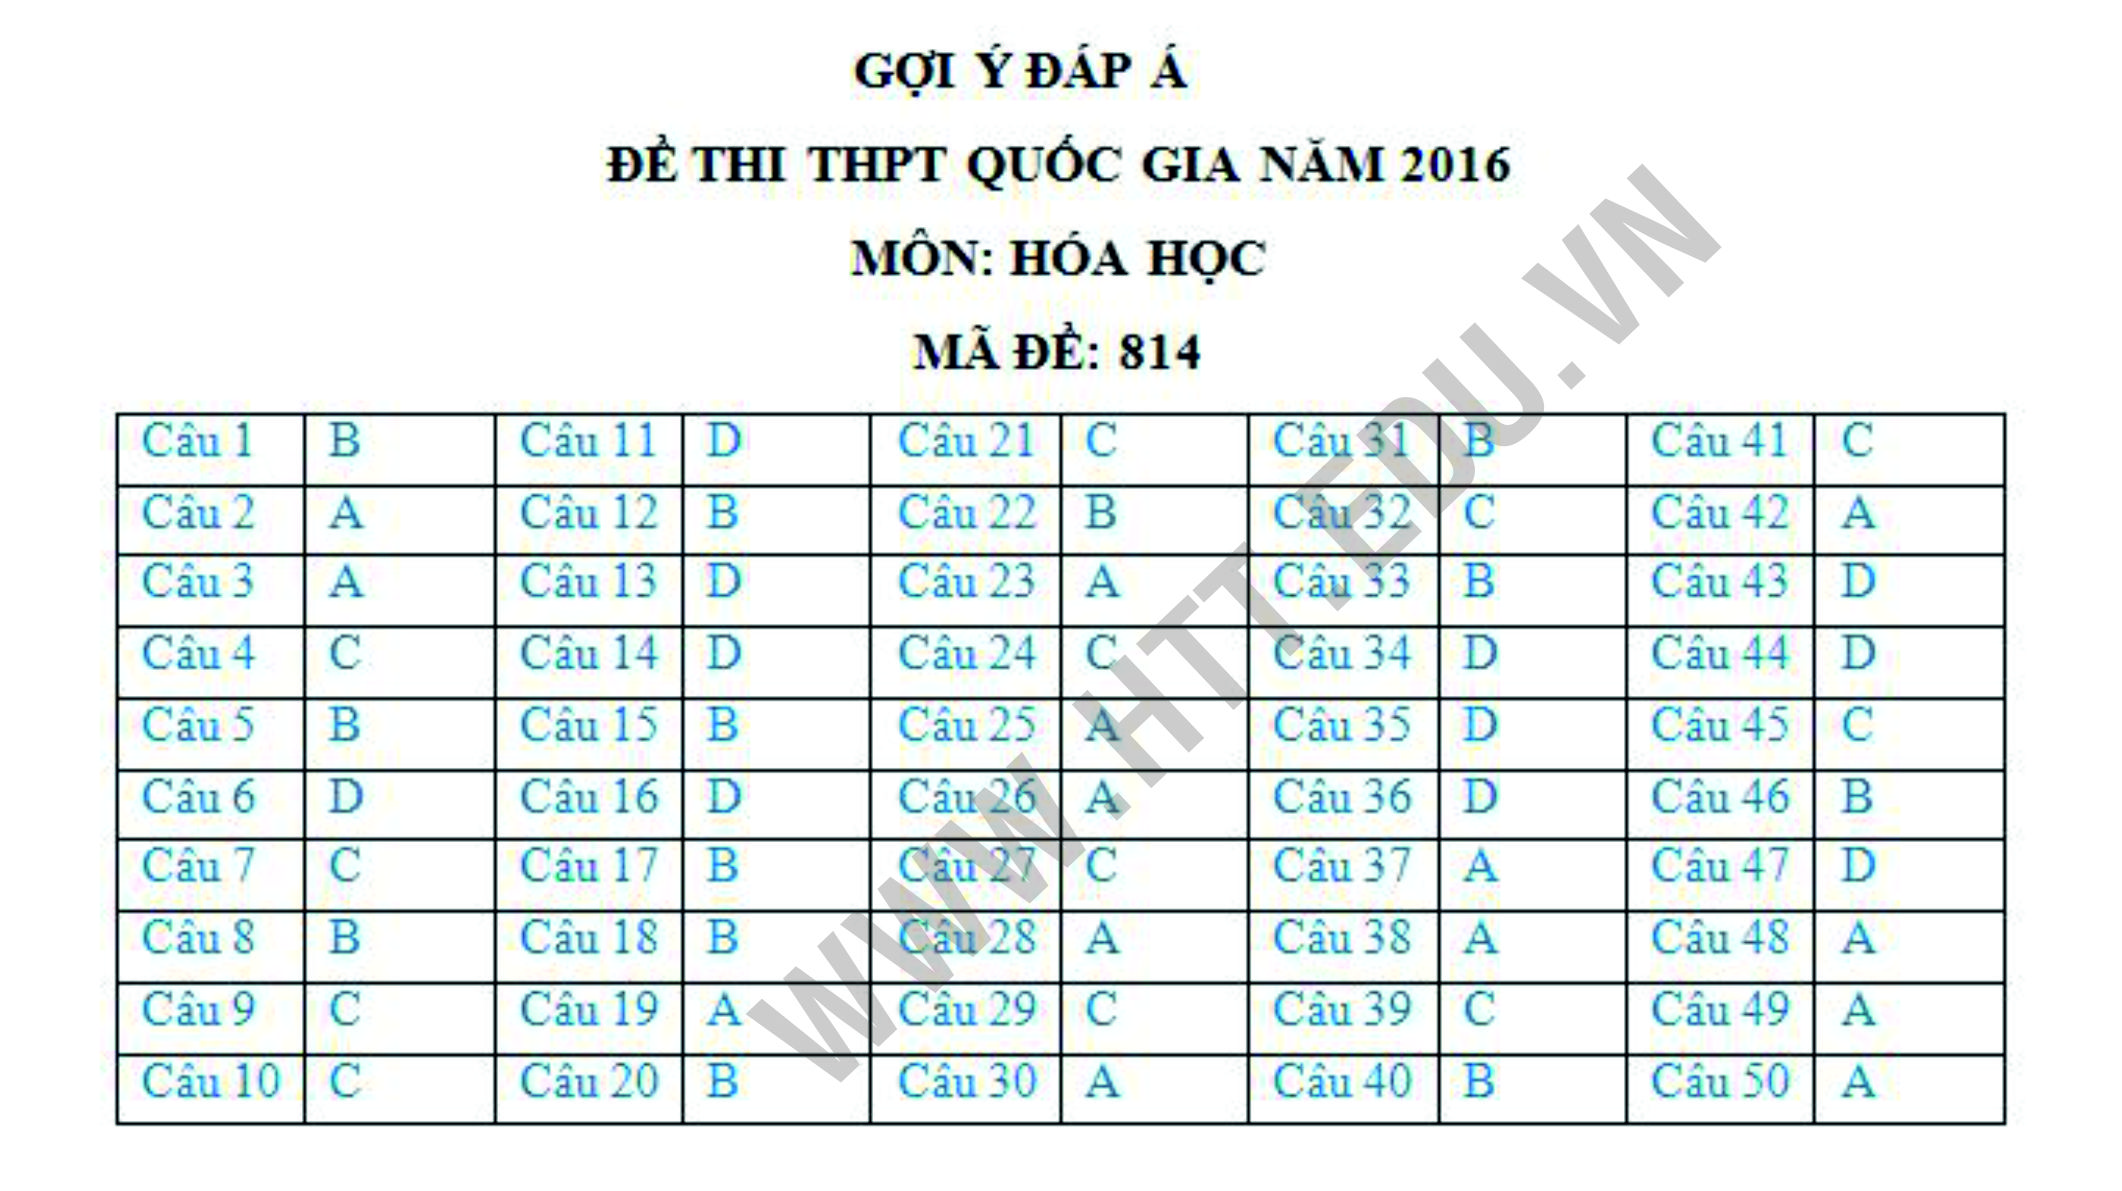 Dap-an-mon-hoa-hoc-MA-DE-814-tot-nghiep-2016-htt.edu.vn-cthn